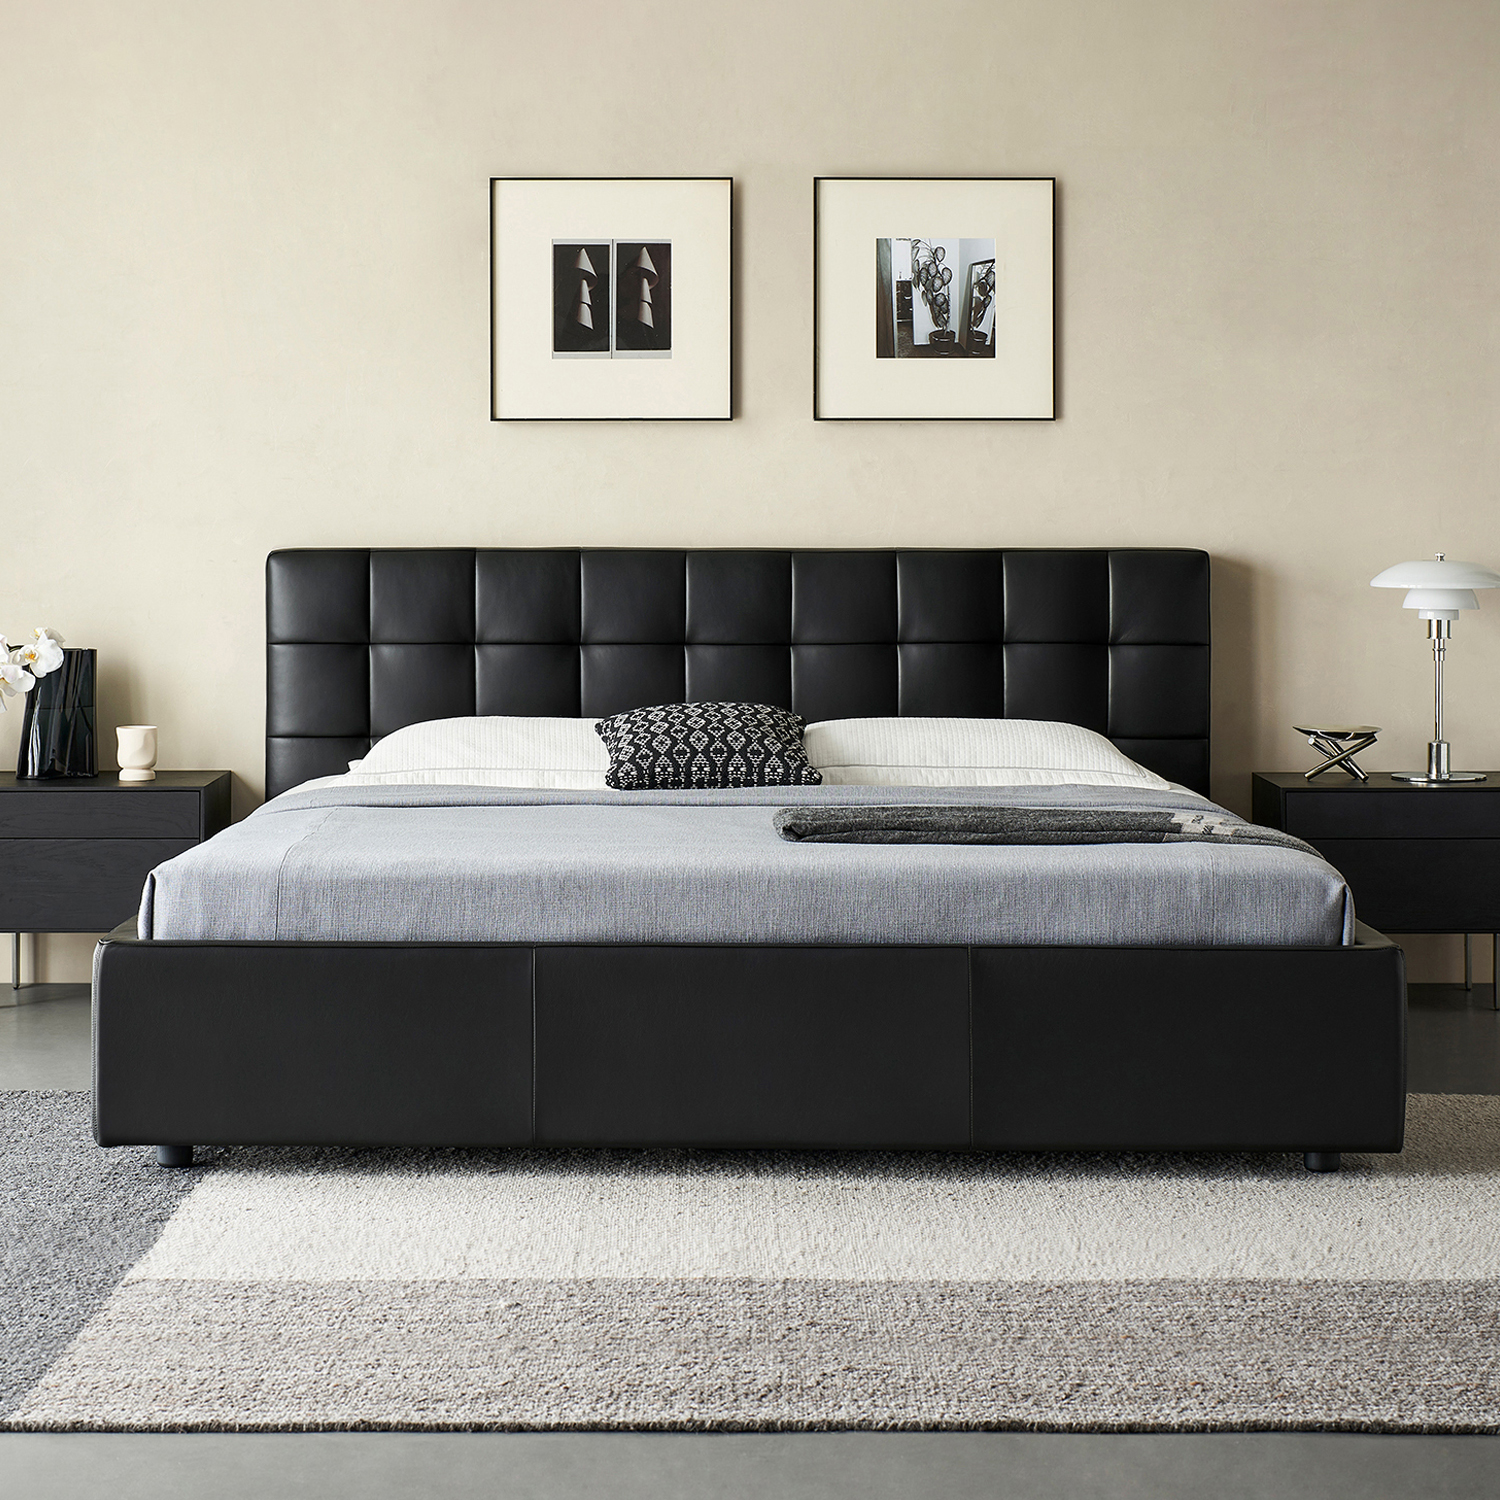 Lenos Modern Bedroom Black Nappa Leather Bed Frames